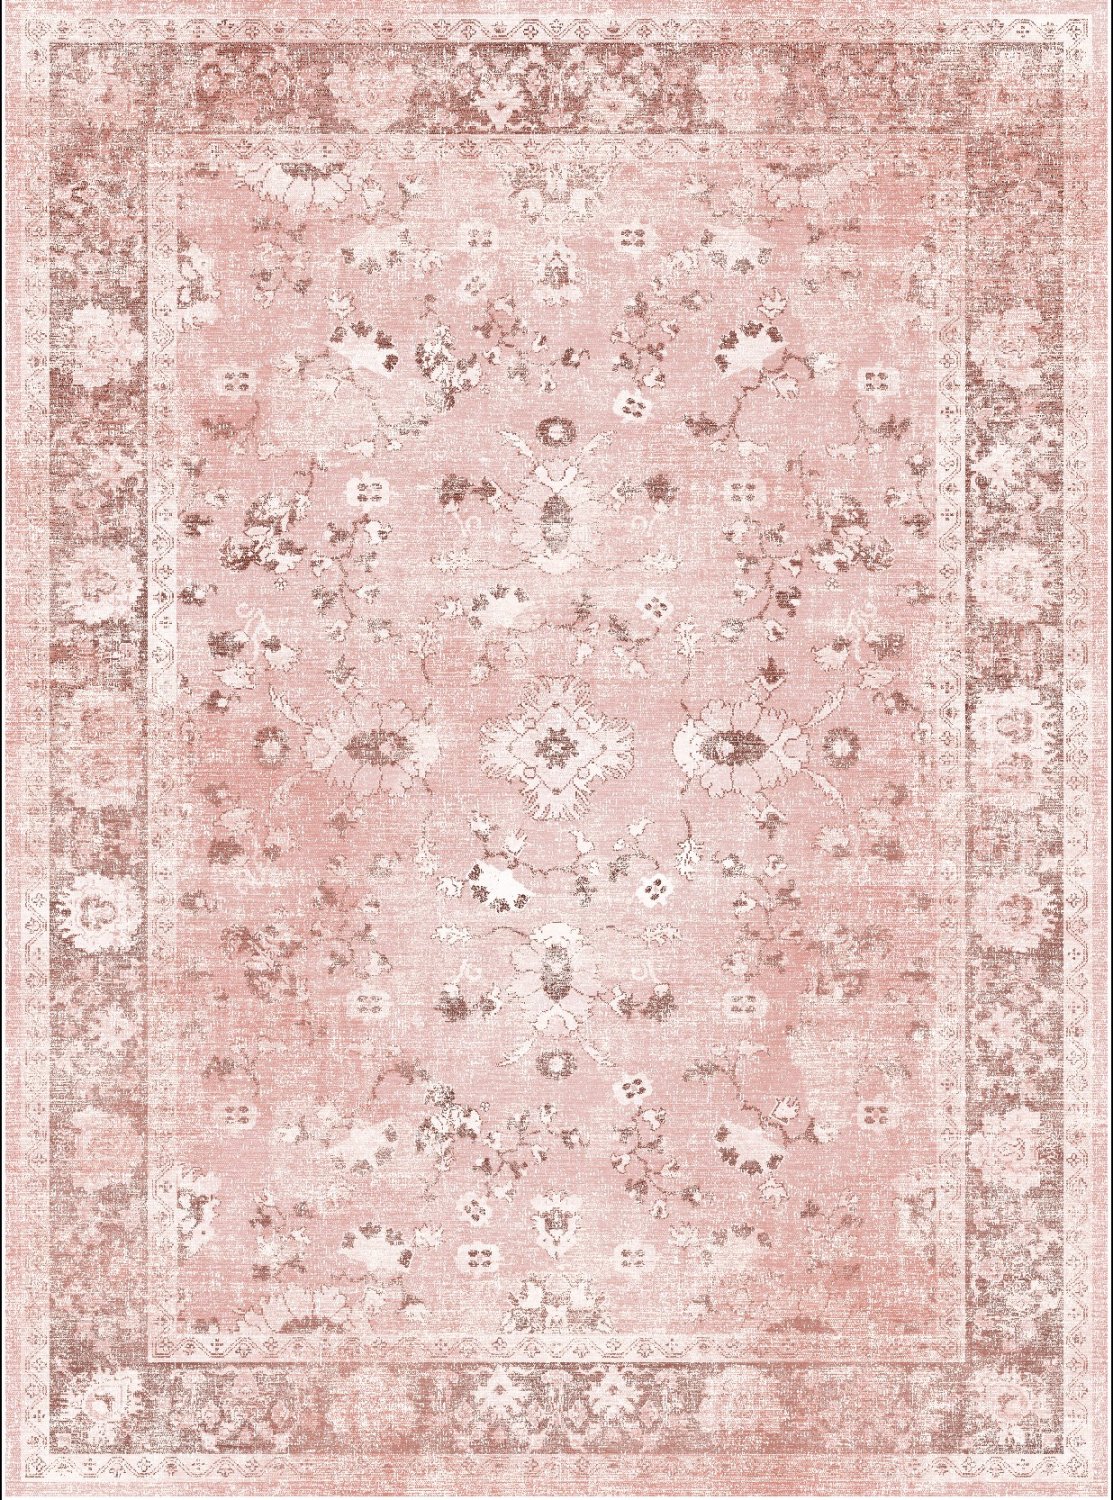 Wilton rug - Gombalia (pink)